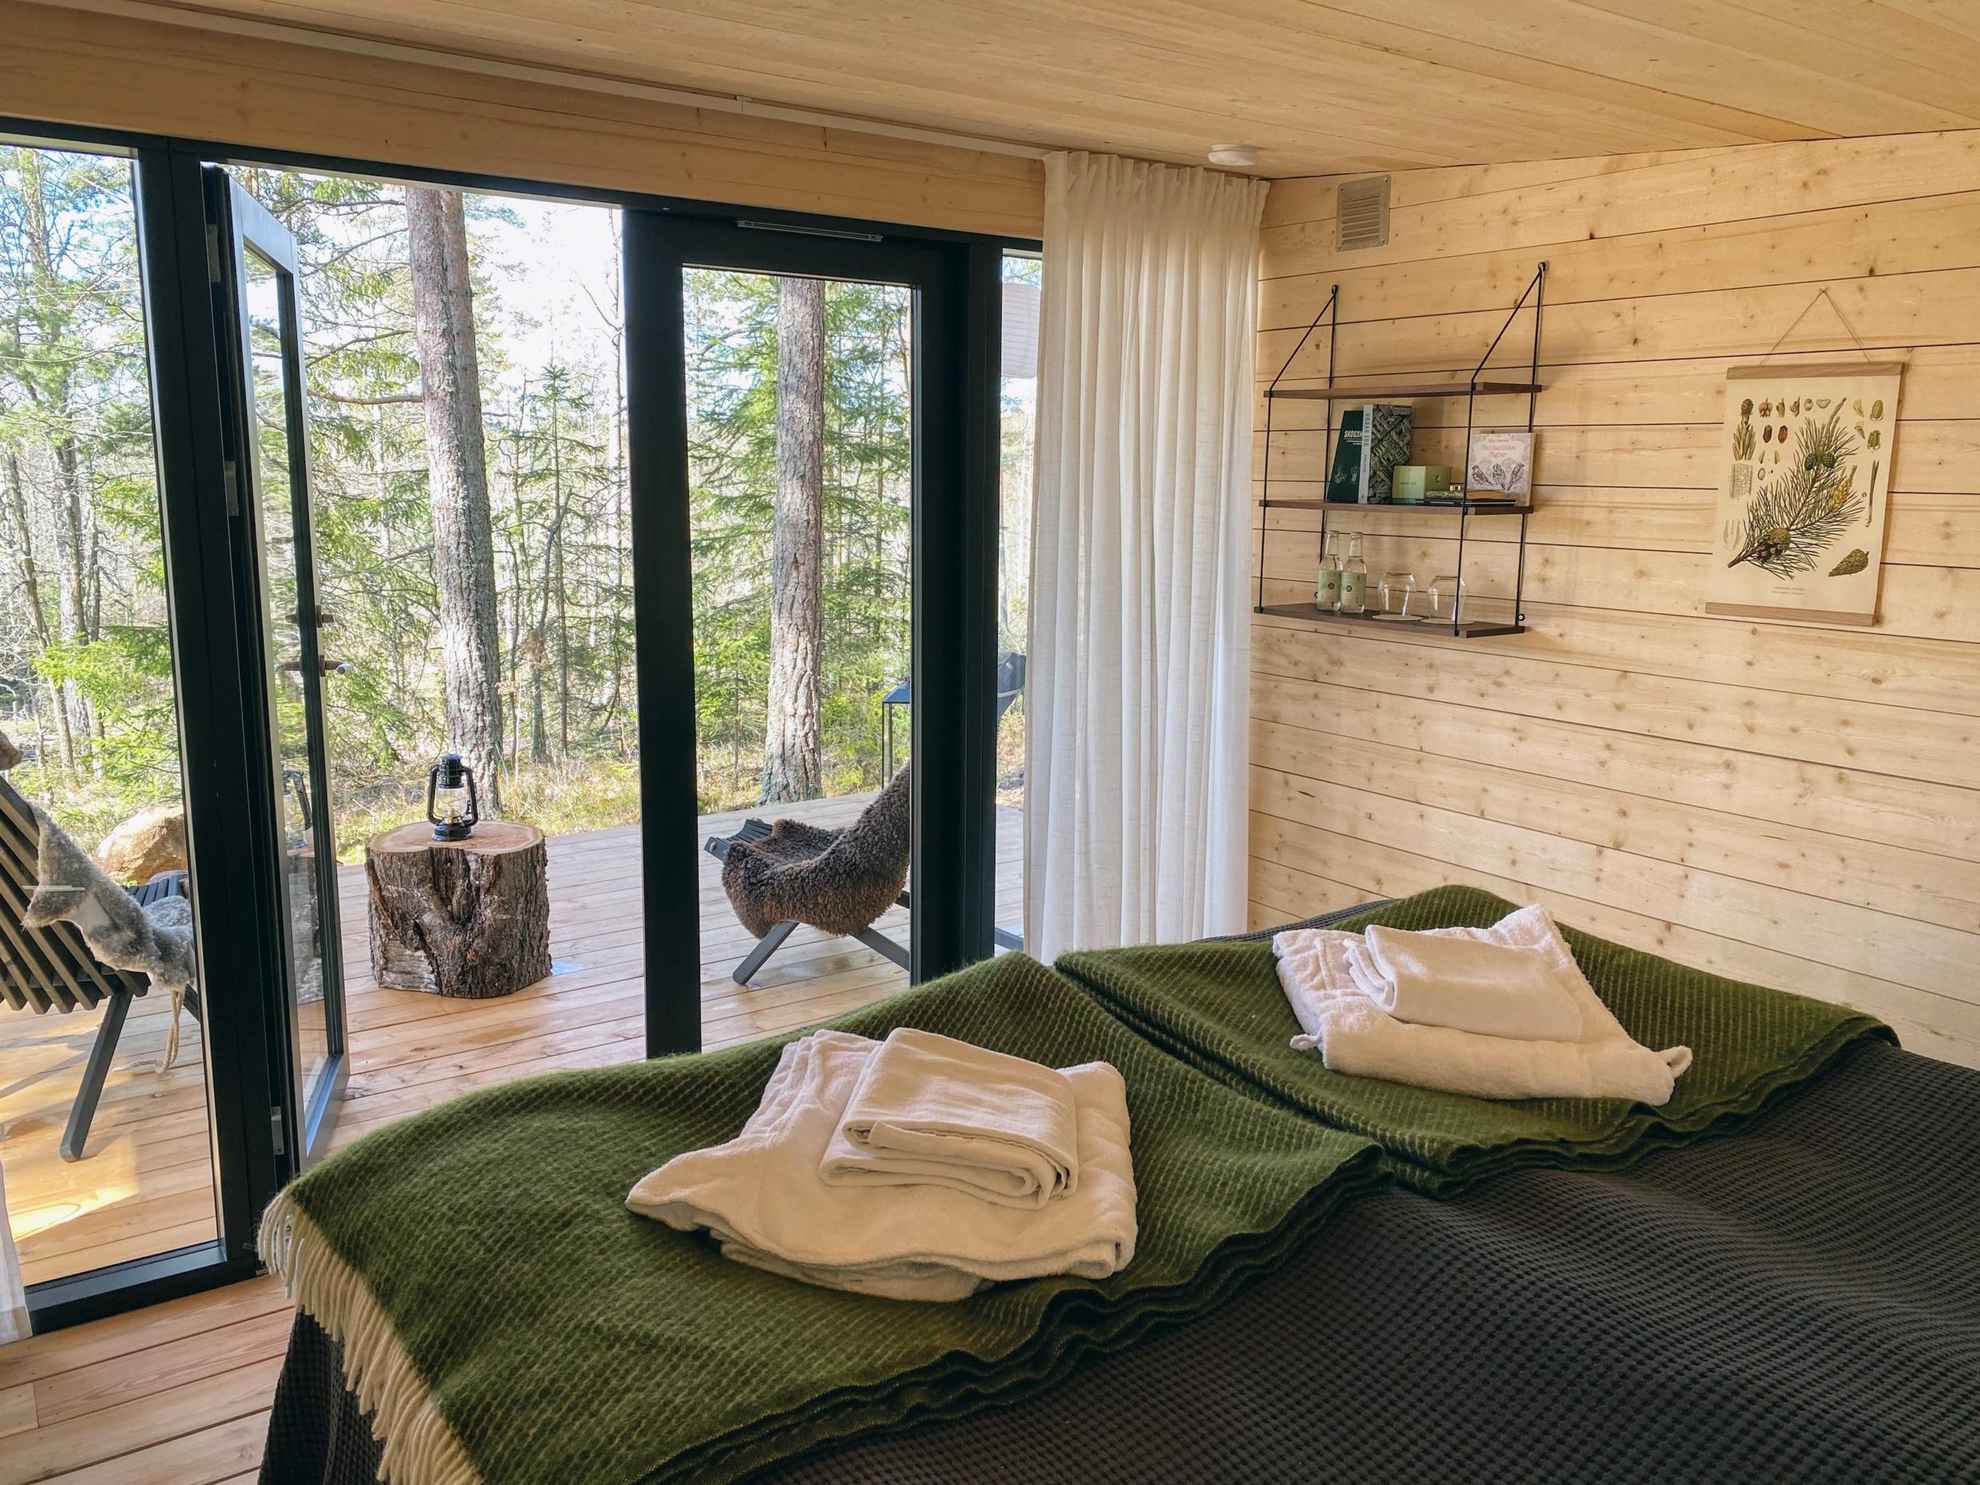 Twee bedden staan in een kamer met houten wanden en vloer. De kamer heeft glazen deuren naar een patio met twee stoelen met uitzicht op de natuur.